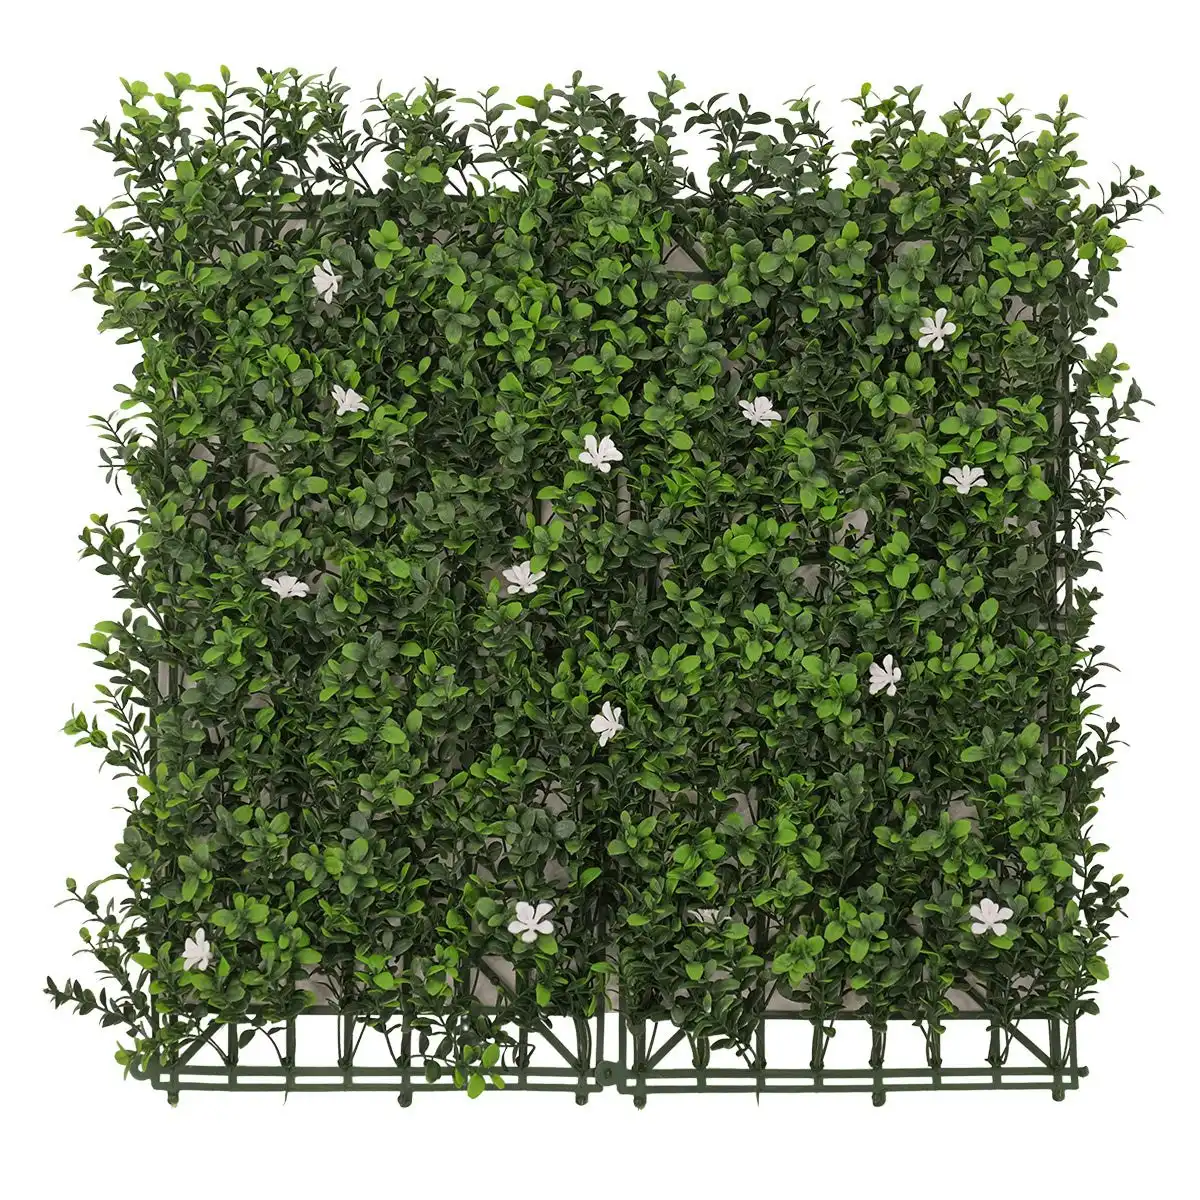 White Flower Artificial Hedge Tile: 50cm x 50cm